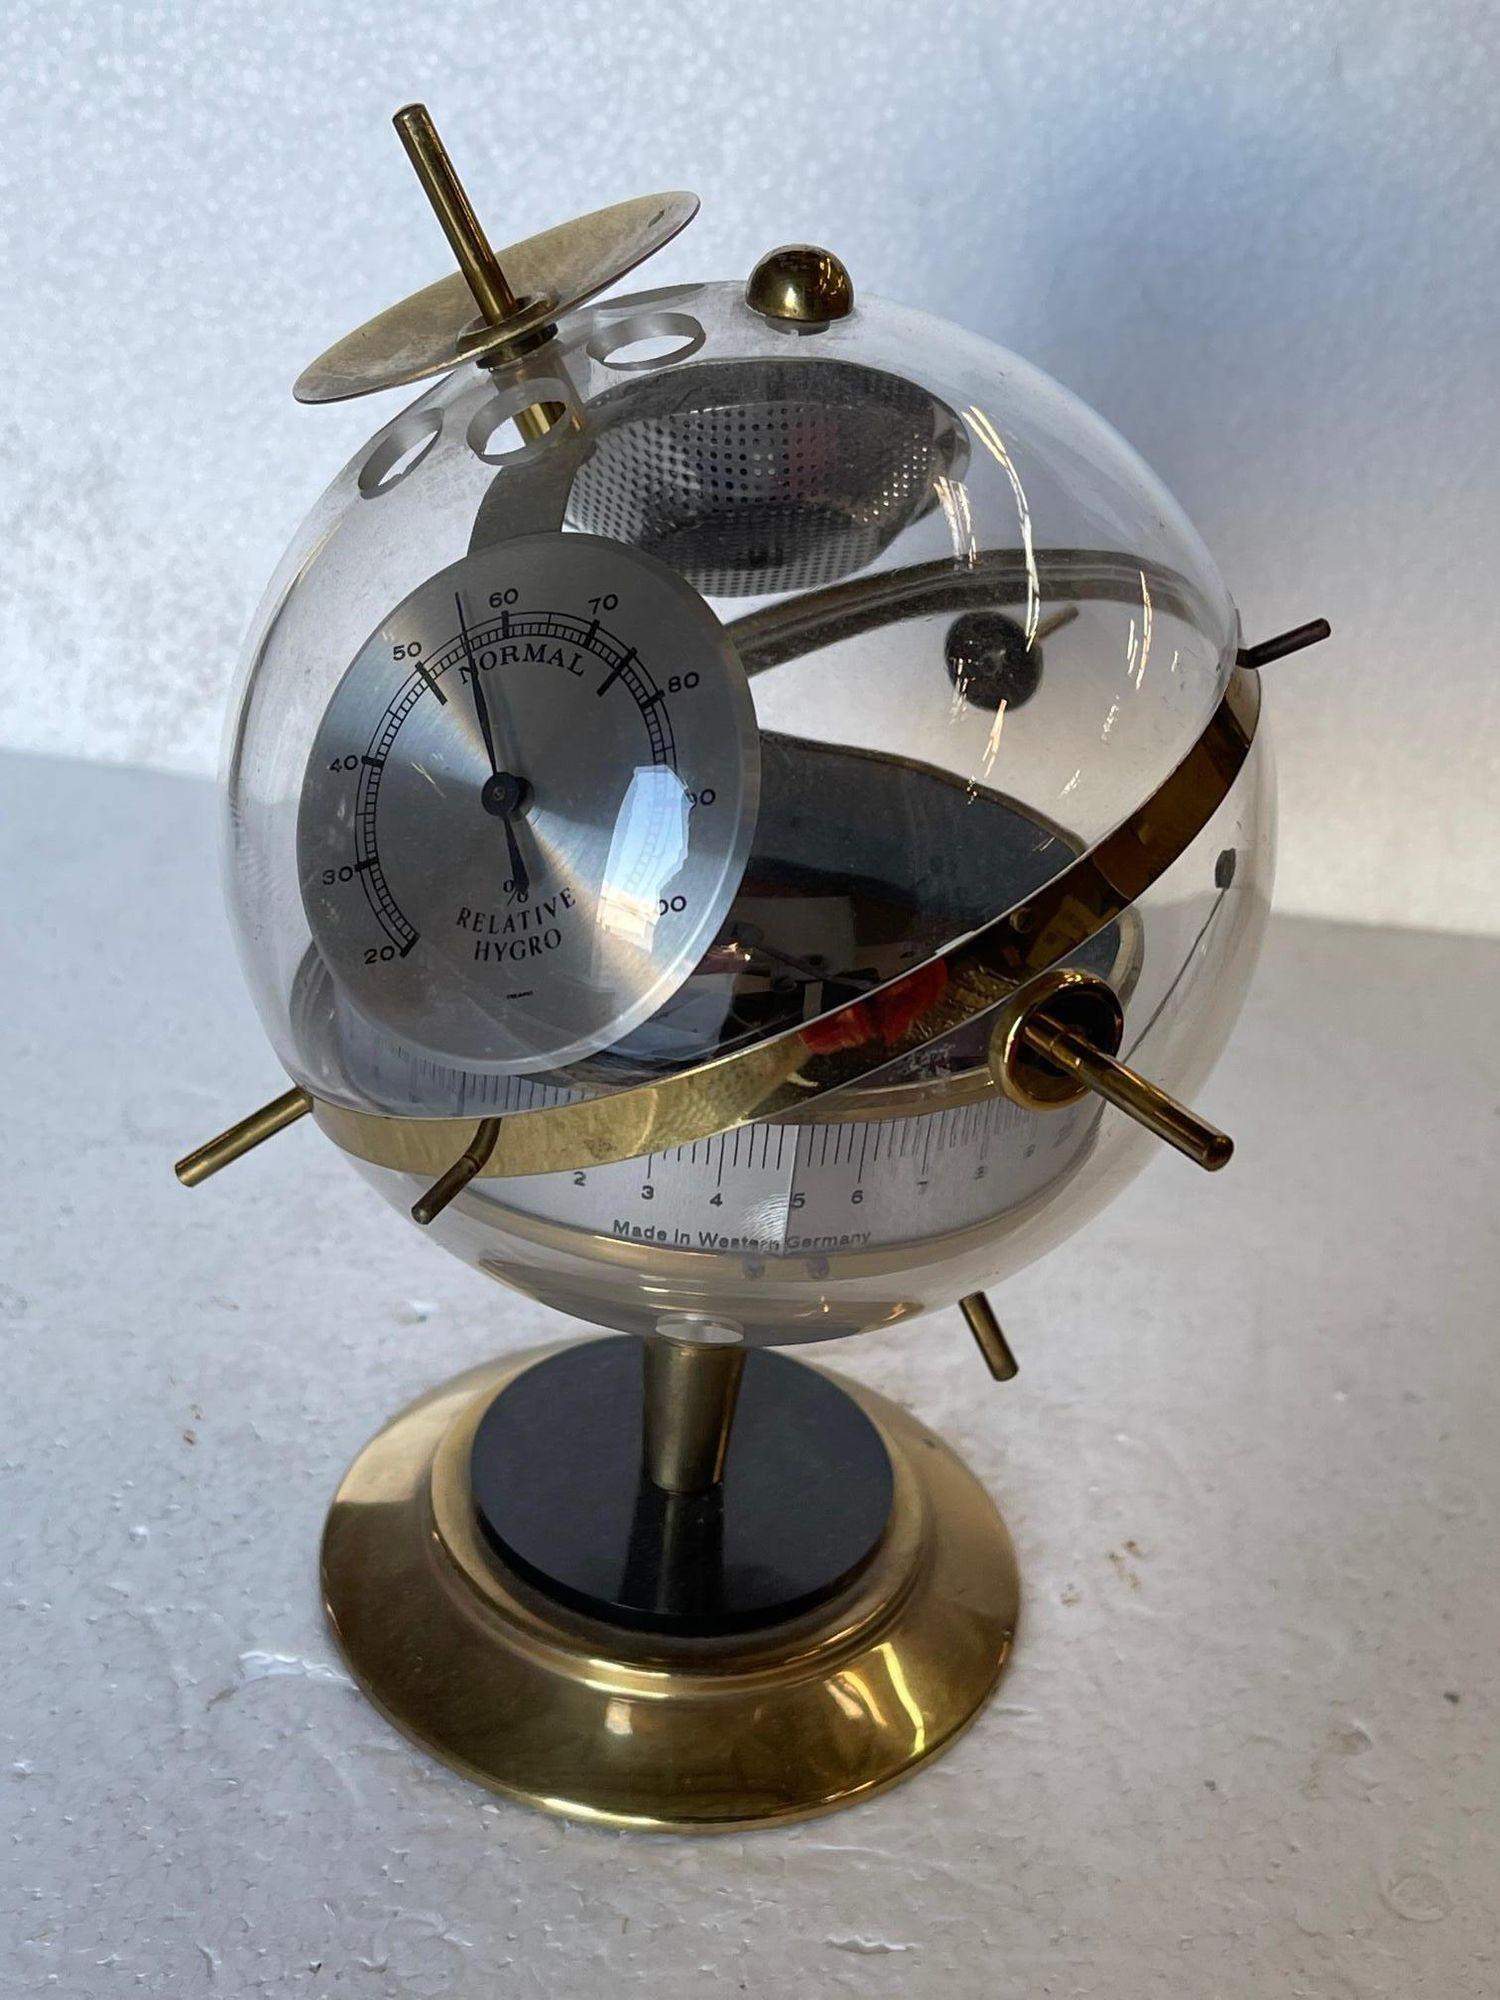 Station météo du milieu du siècle en acrylique et laiton. Cette sphère comprend un baromètre, un hygromètre et un thermomètre.

Allemagne de l'Ouest, vers 1960